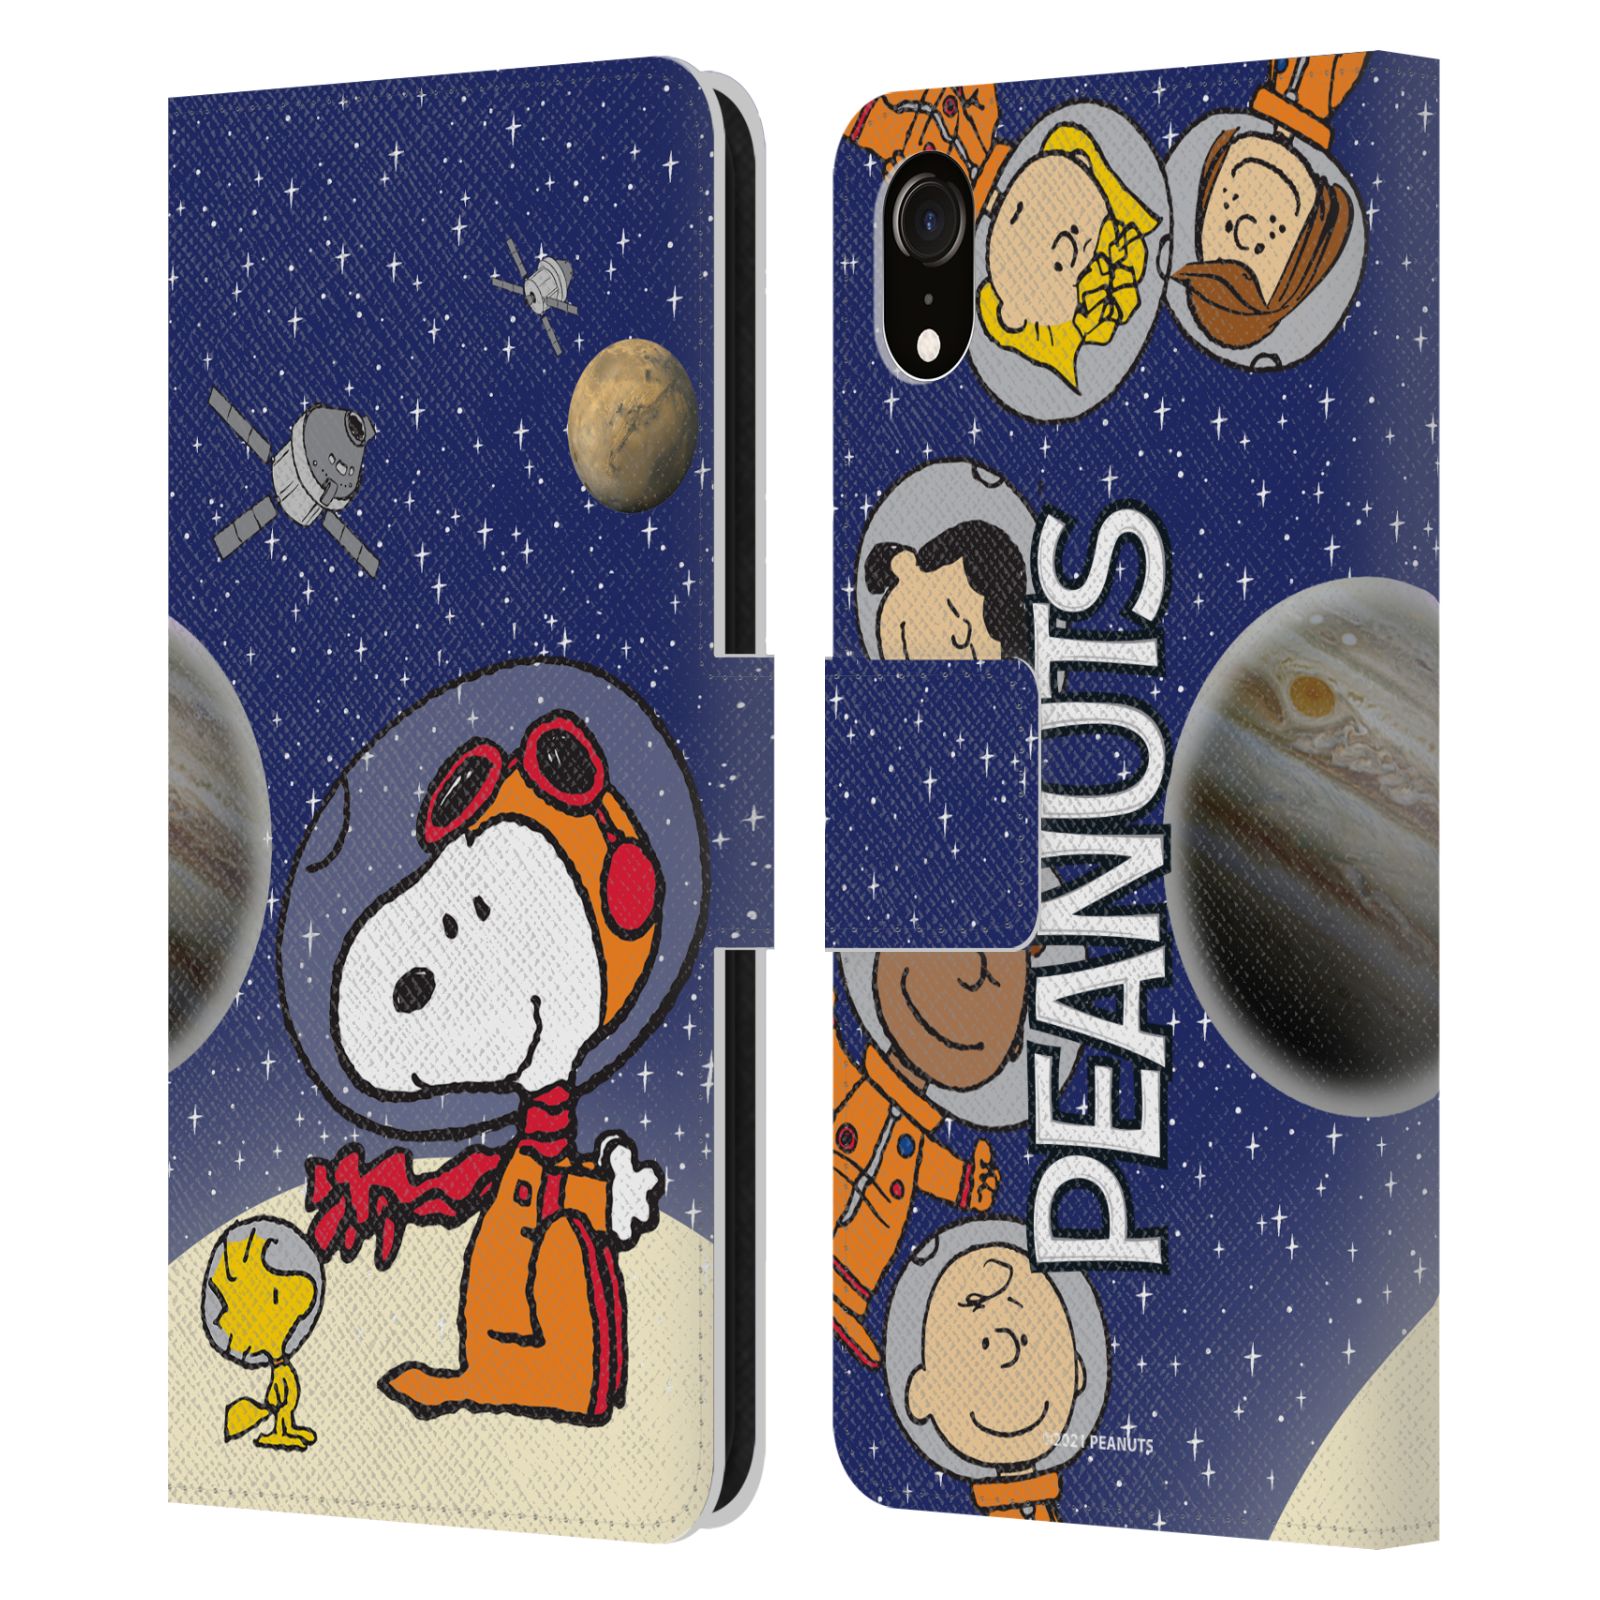 Pouzdro na mobil Apple Iphone XR - HEAD CASE - Peanuts Snoopy ve vesmíru 2